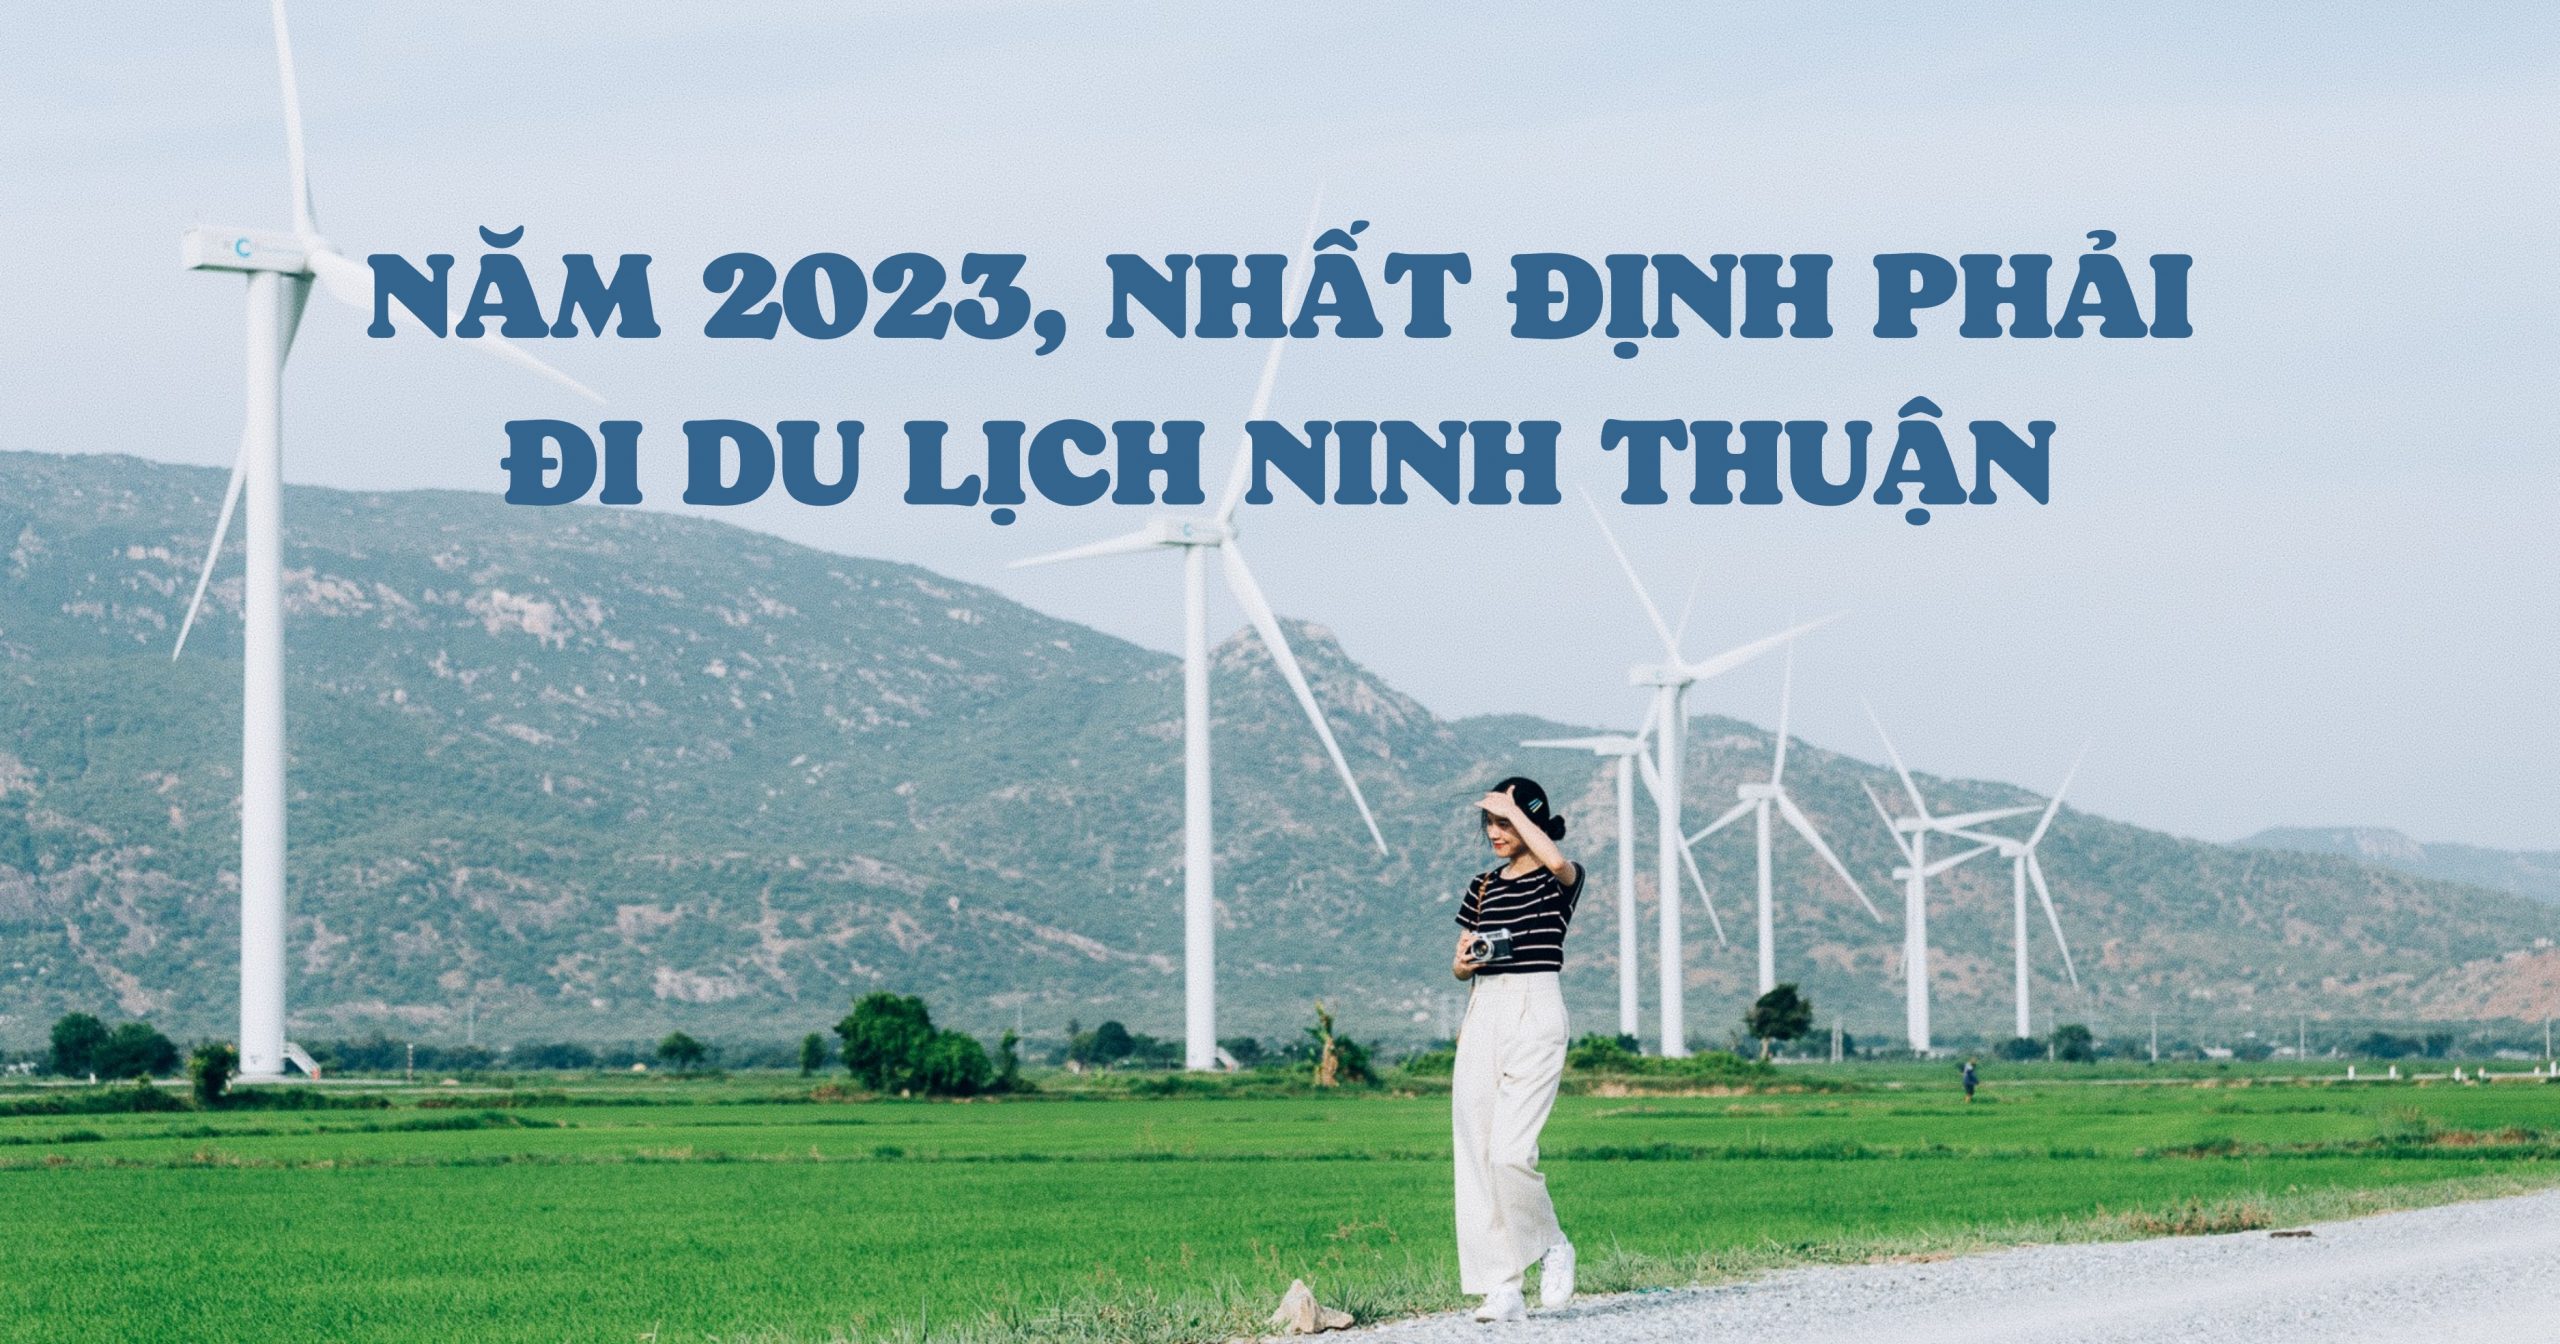 Năm 2023 nhất định phải đi du lịch Ninh Thuận